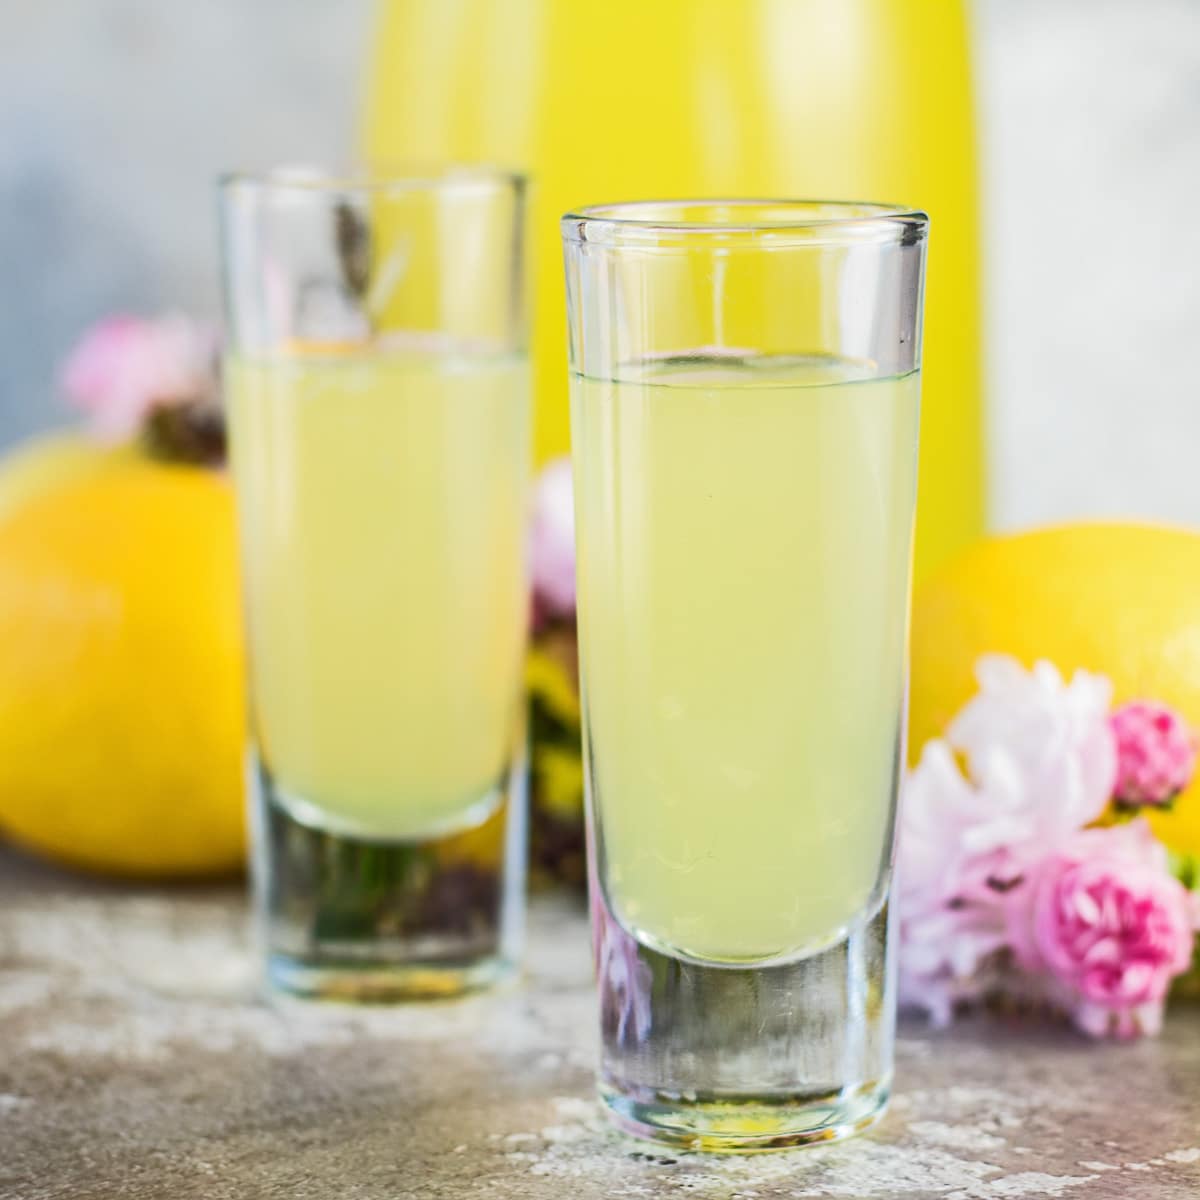 Lemoncello buatan sendiri disajikan dalam gelas kecil dengan buah dan bunga merah muda di latar belakang.